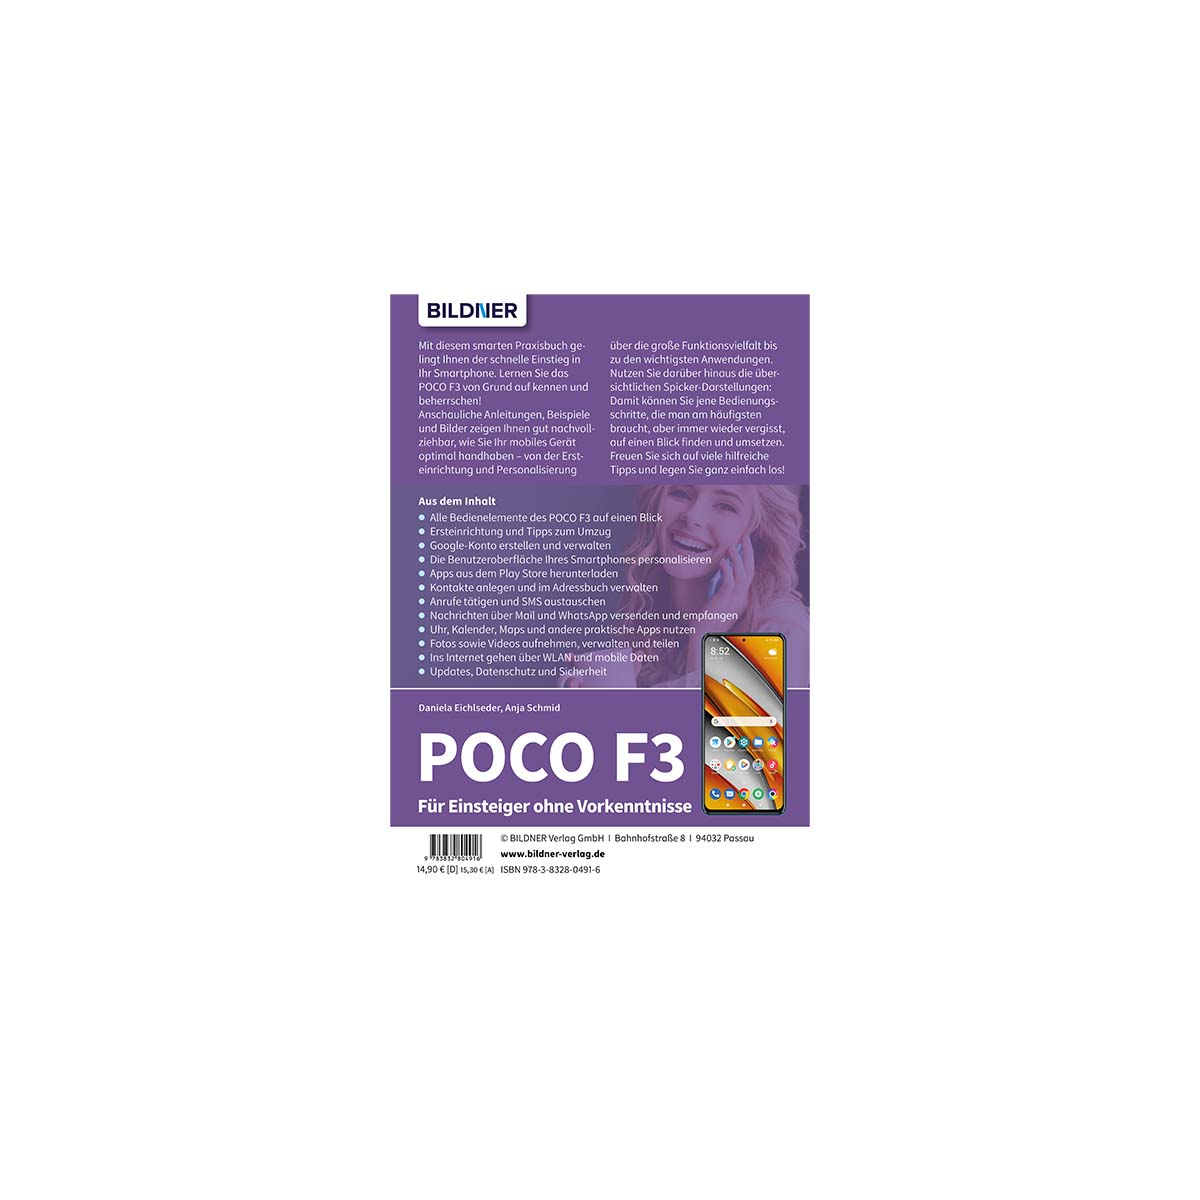 POCO F3 - Für Einsteiger Vorkenntnisse ohne